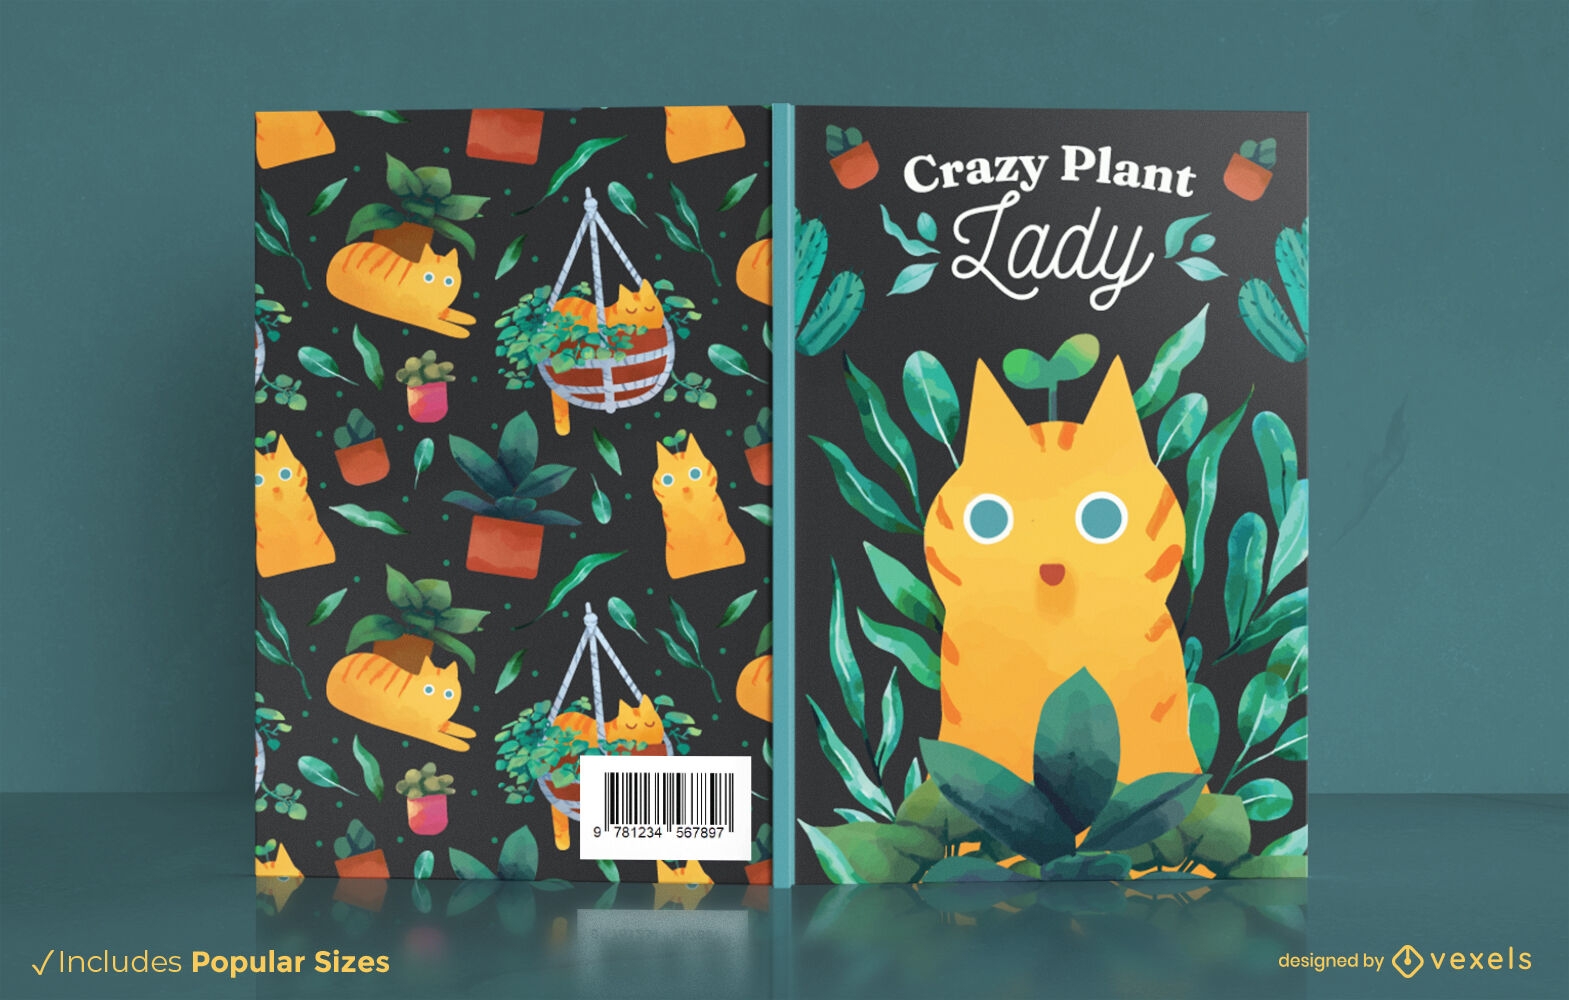 Crazy plant lady book cover design